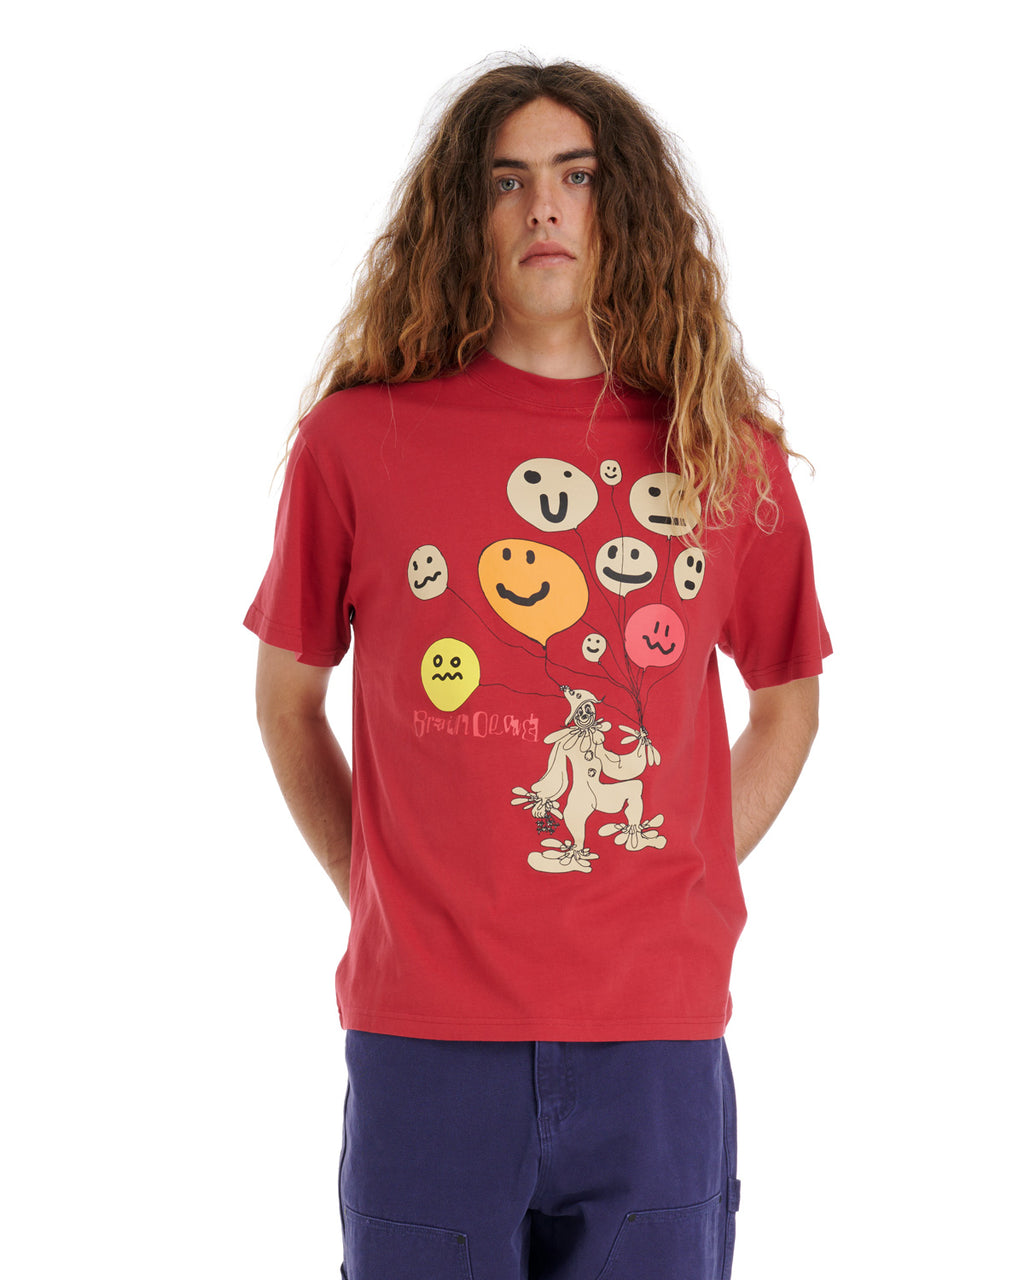 Balloon Man T-Shirt - Red 4